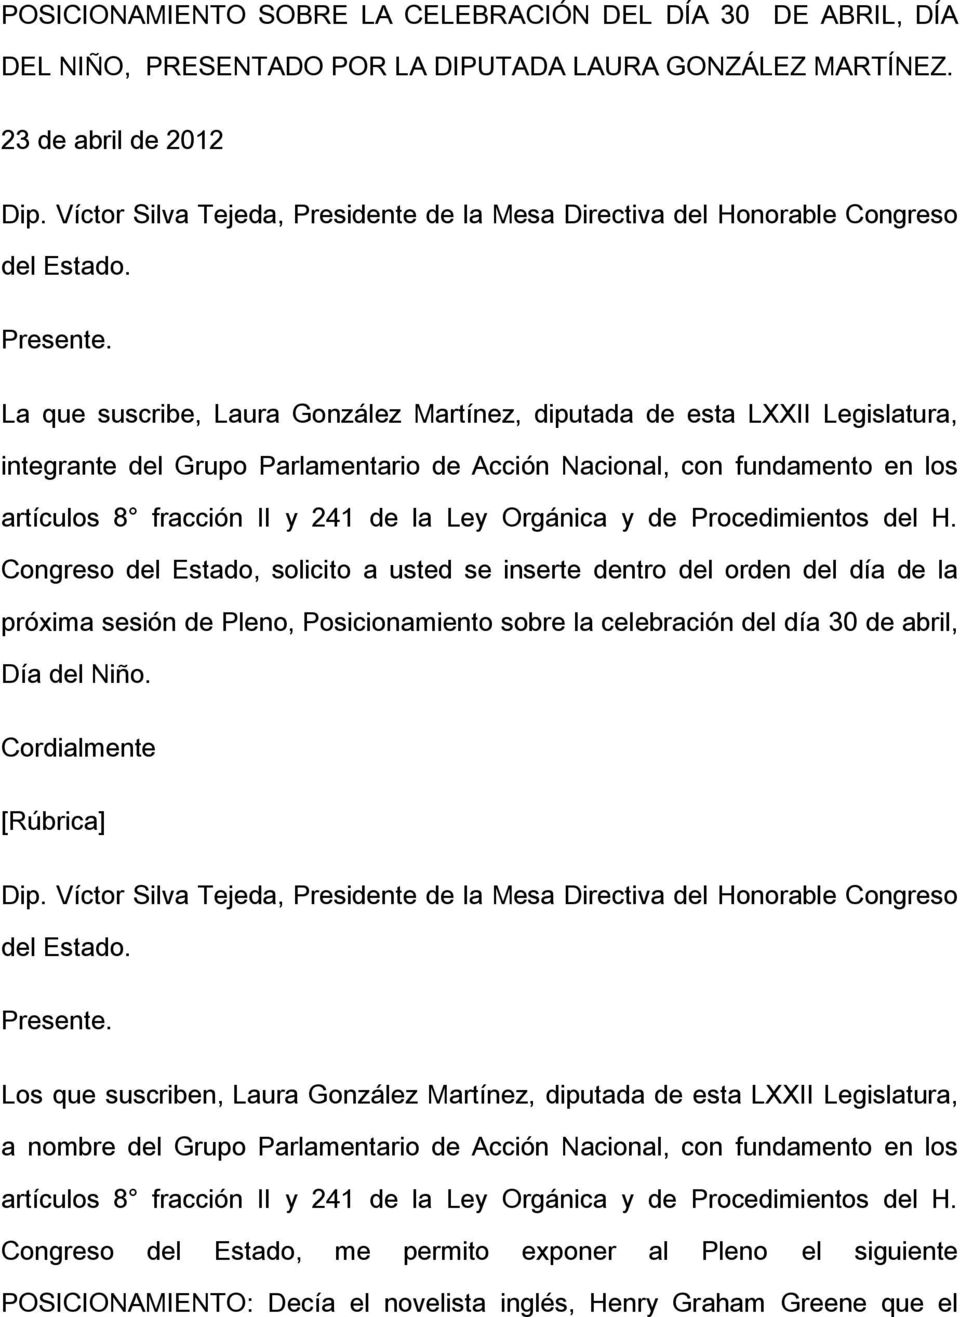 La que suscribe, Laura González Martínez, diputada de esta LXXII Legislatura, integrante del Grupo Parlamentario de Acción Nacional, con fundamento en los artículos 8 fracción II y 241 de la Ley